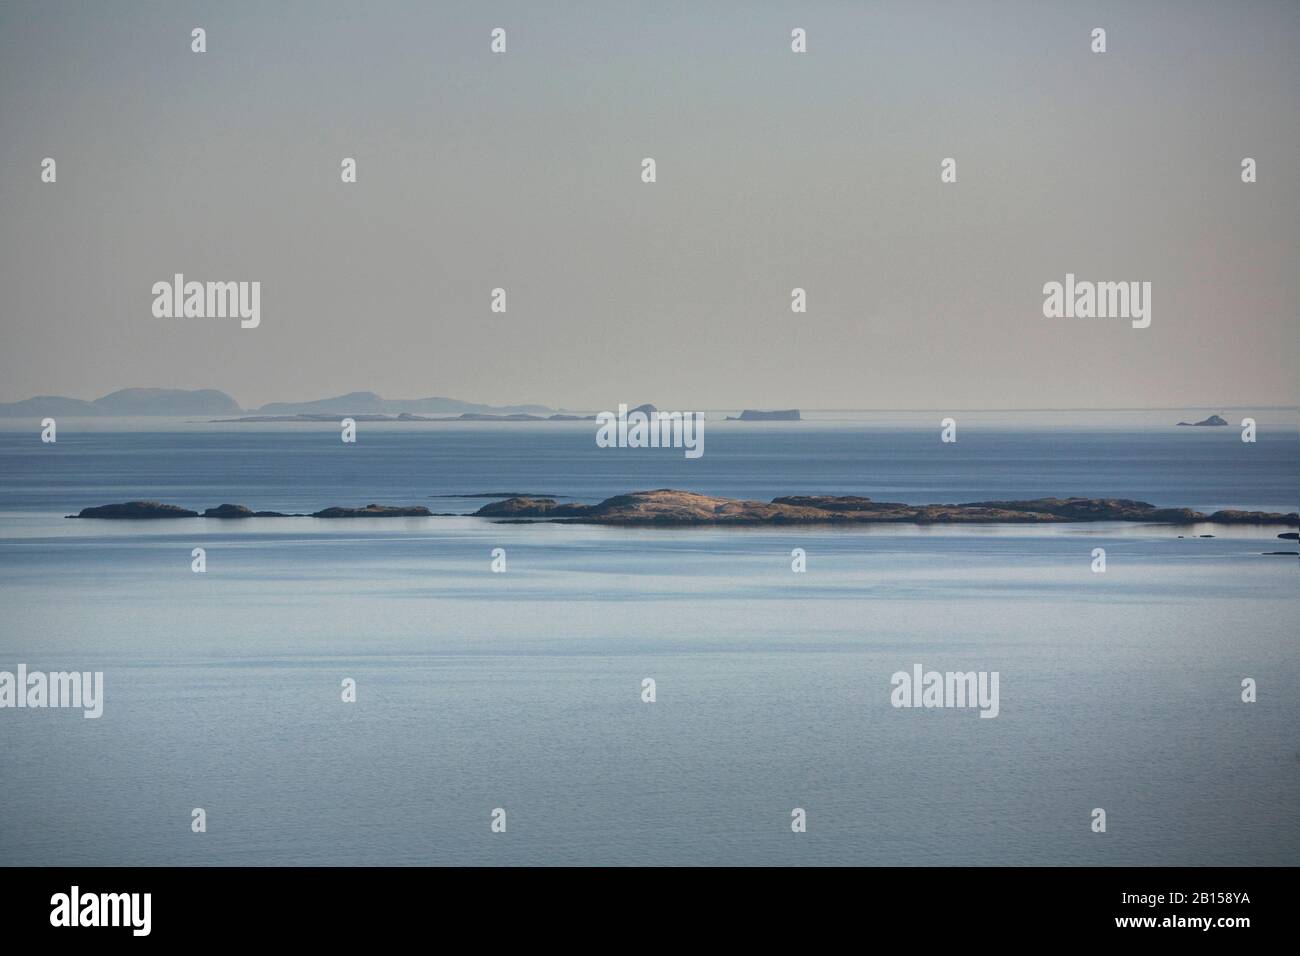 Les îles Shants, au loin derrière les îles Ascripb, vues de l'île de Skye, des îles occidentales, du nord-ouest de l'Écosse, du Royaume-Uni et de la Grande-Bretagne Banque D'Images